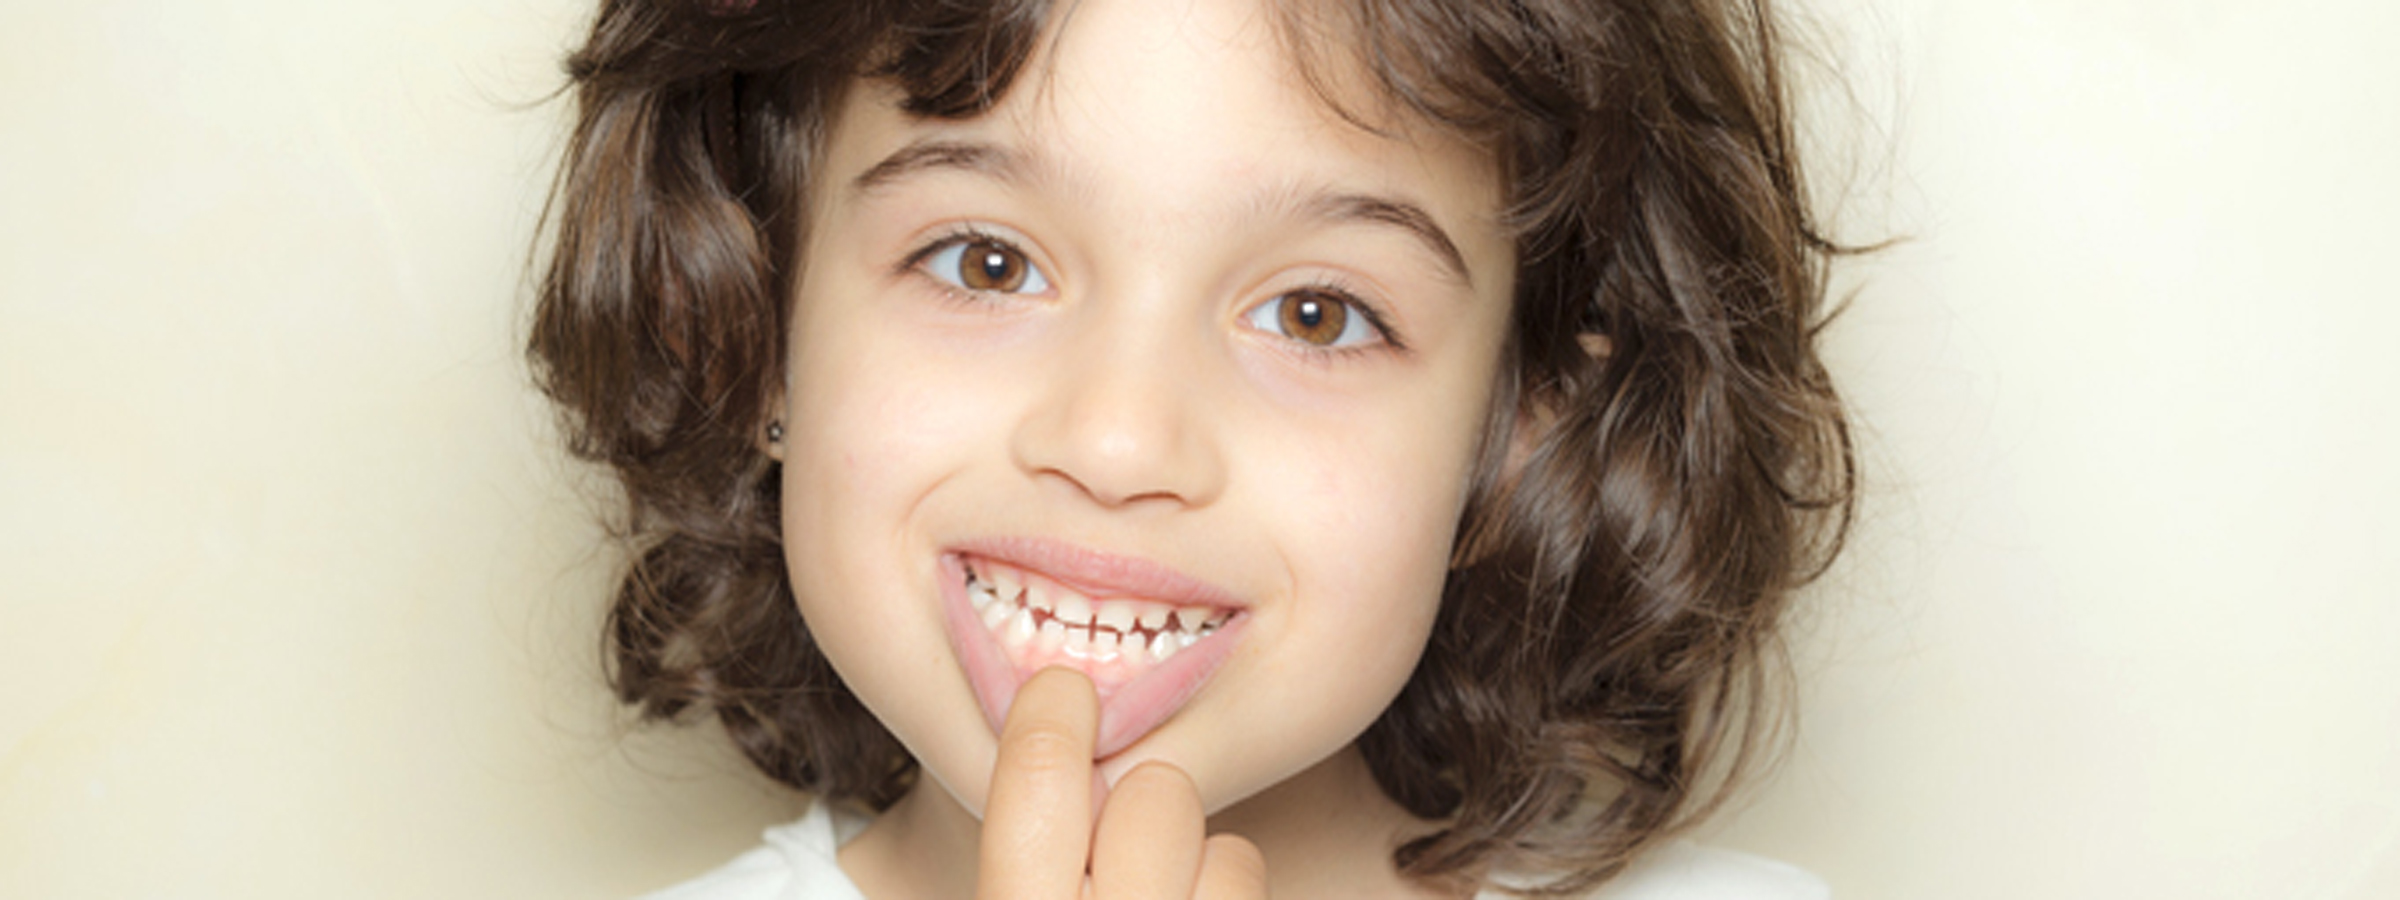 小児歯科 虫歯治療 岩見沢の歯医者なら鳩が丘歯科クリニック 矯正 インプラントに実績